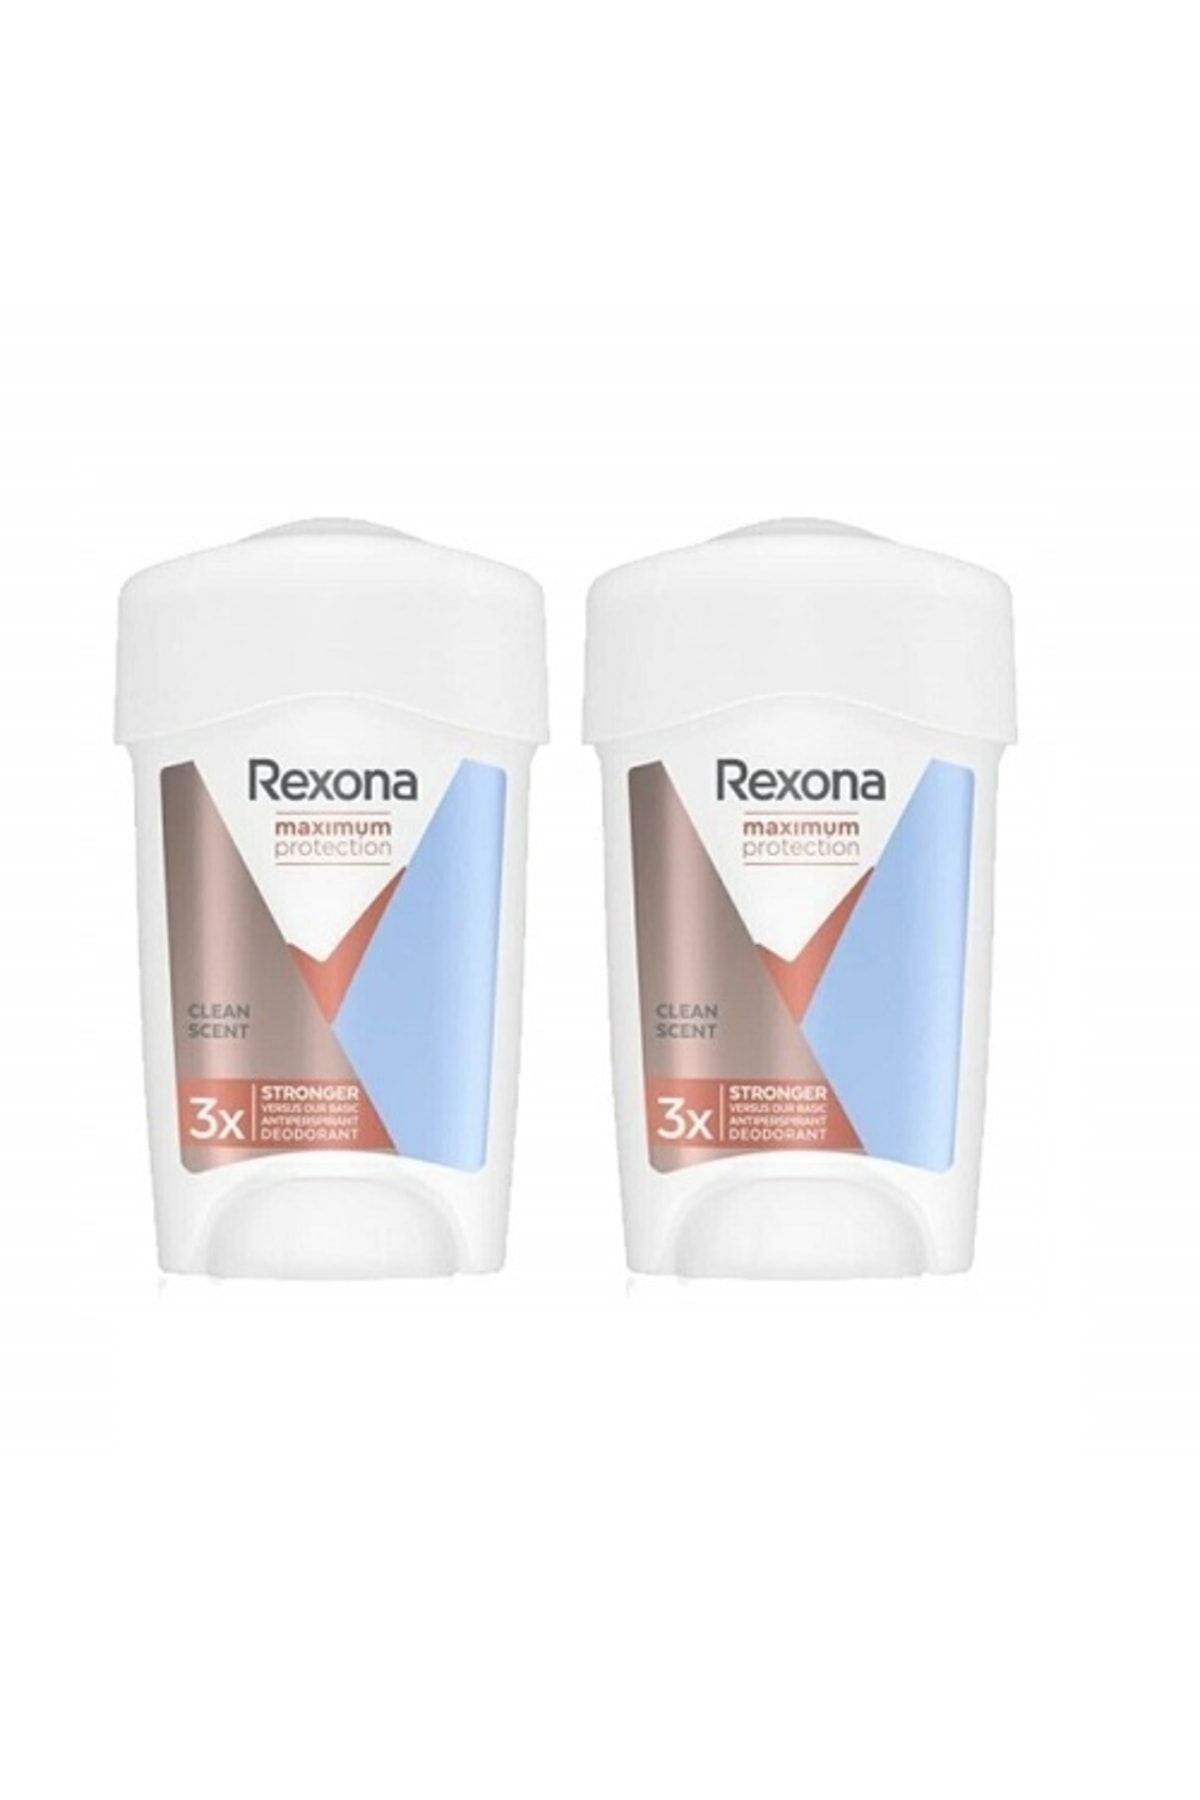 Rexona Maximum Protection Cream Clent Scent 96 Saat 45 ml X 2 Ad